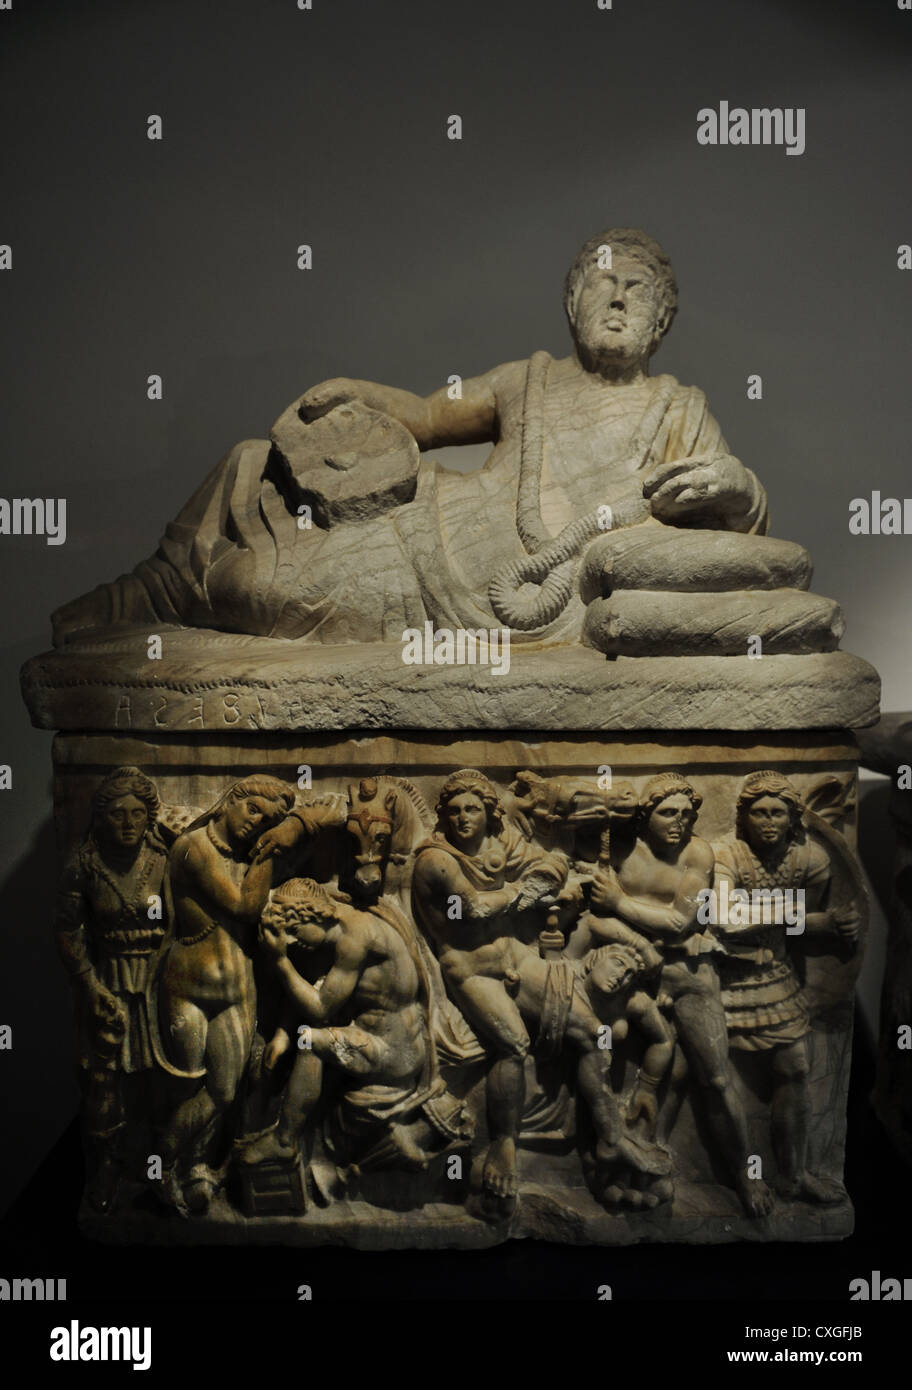 Cineray Urne auf Podium. Kammergrab der Pruni Familie in der Nähe von Chiusi, Etrurien. 200-100 v. Chr. Ny Carlsberg Glyptotek. Stockfoto